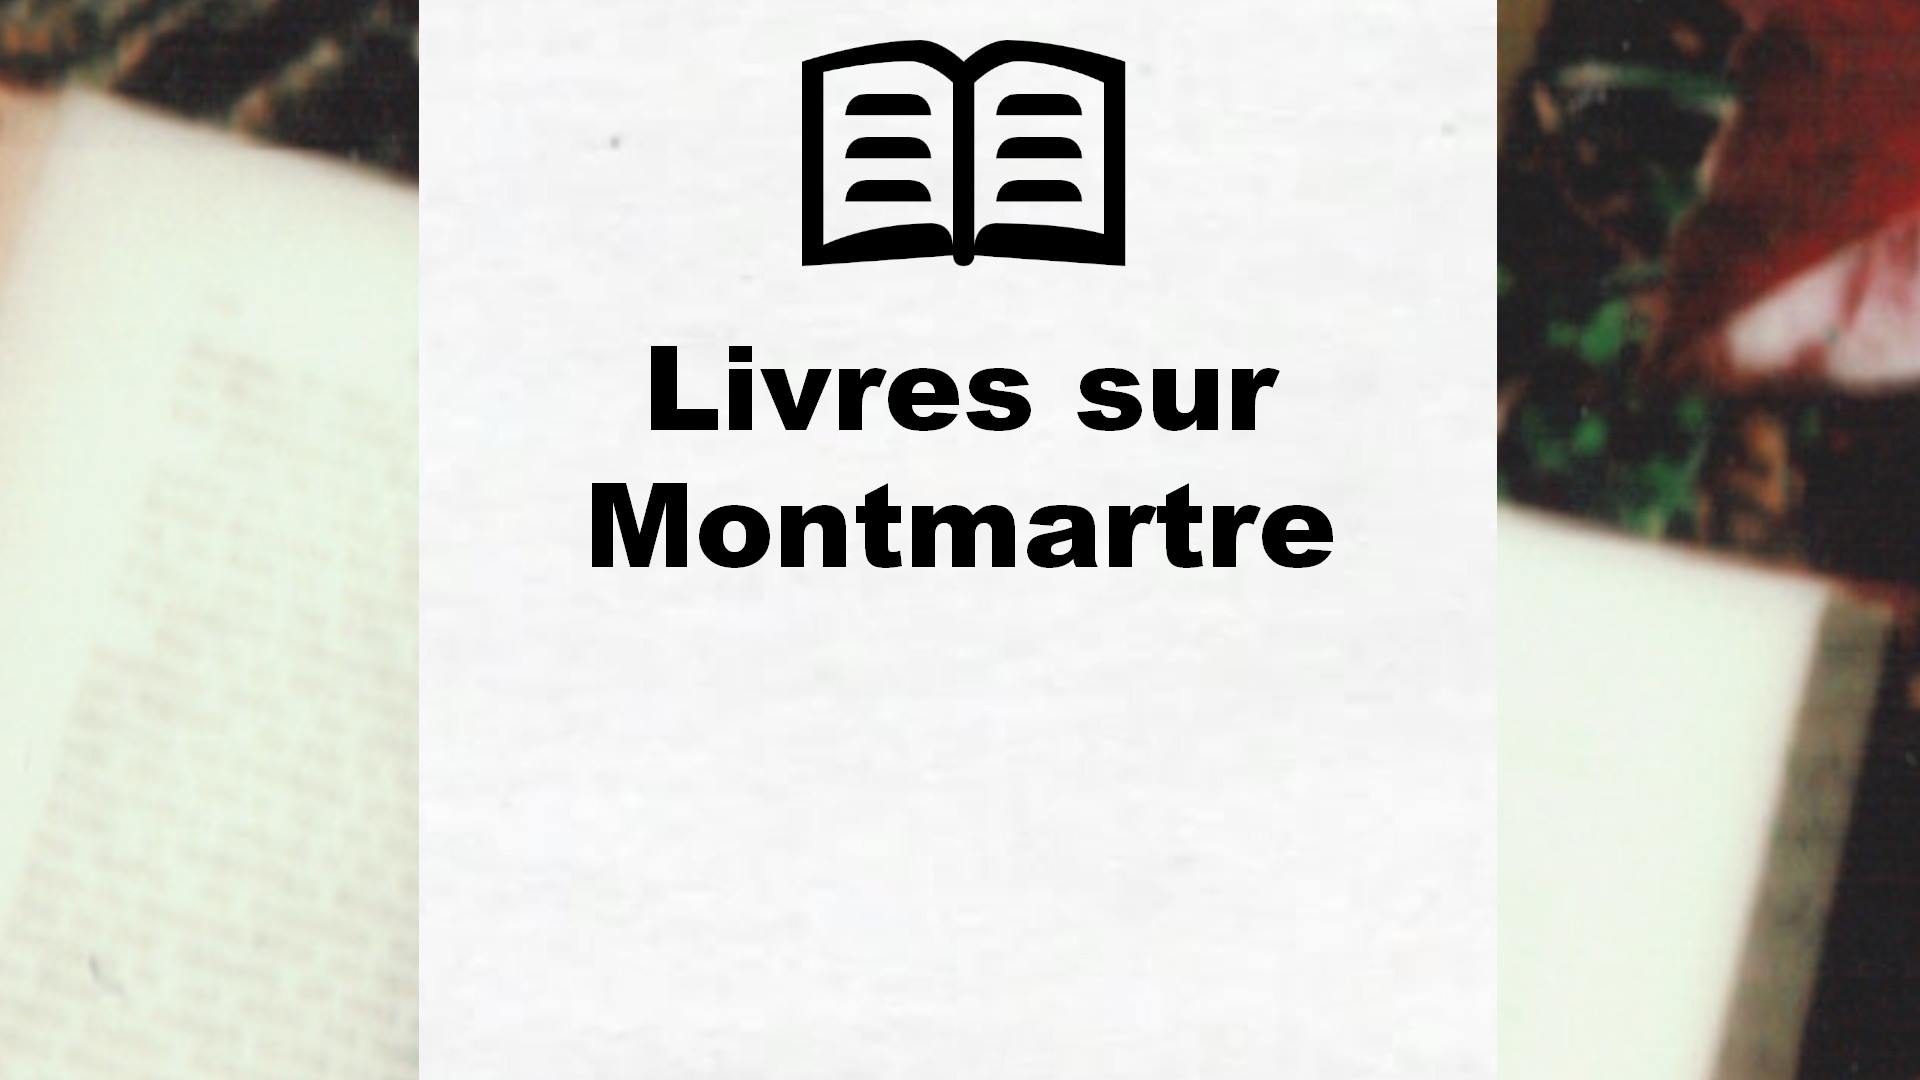 Livres sur Montmartre